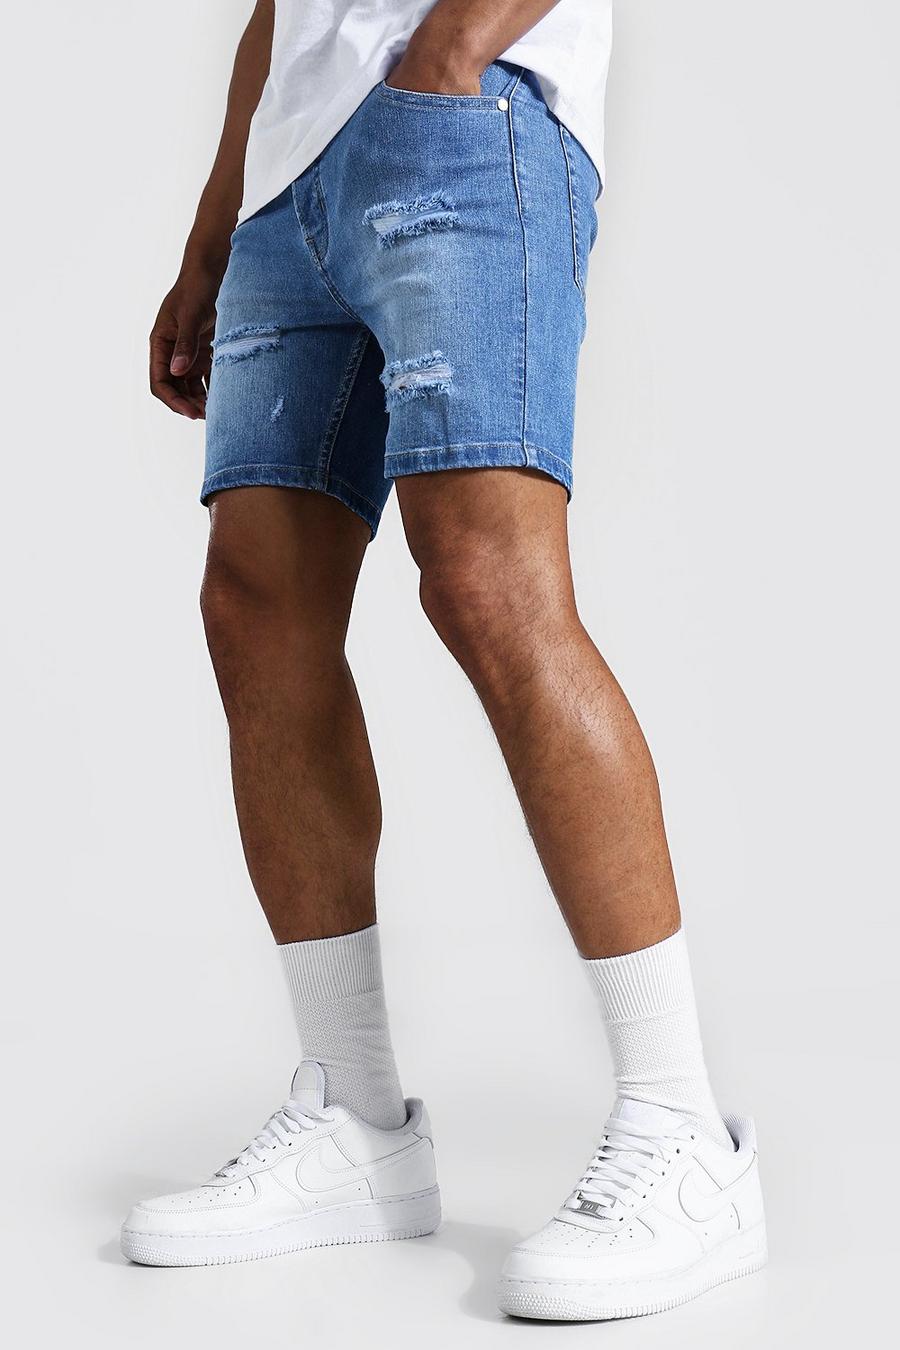 Pantalones cortos estilo vaquero skinny elásticos con rasgaduras múltiples, Azul antiguo image number 1